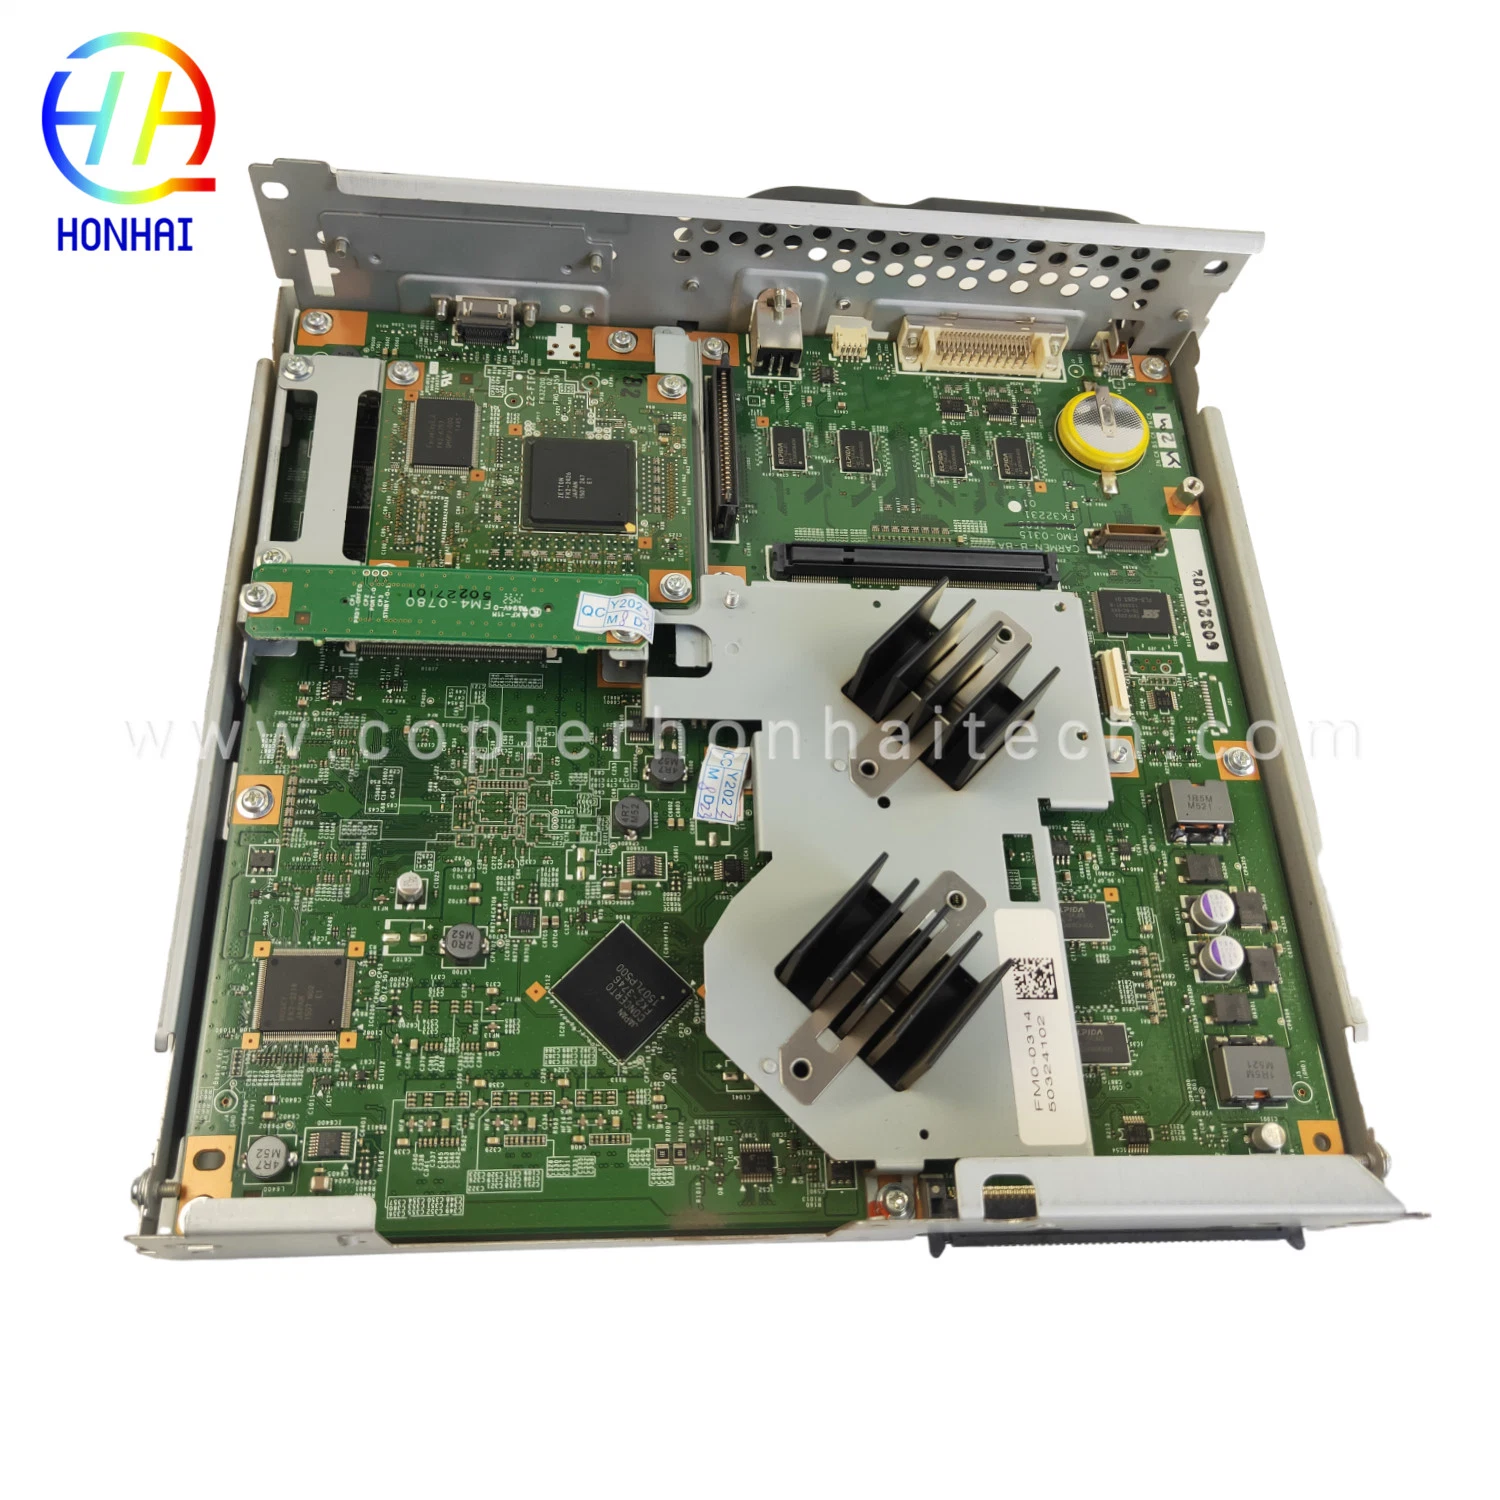 Original Main Controller PCB Assembly for Canon IR Advance C5235 C5240 C5240 FM0-0339-000 FM0-0314 FM0-0315